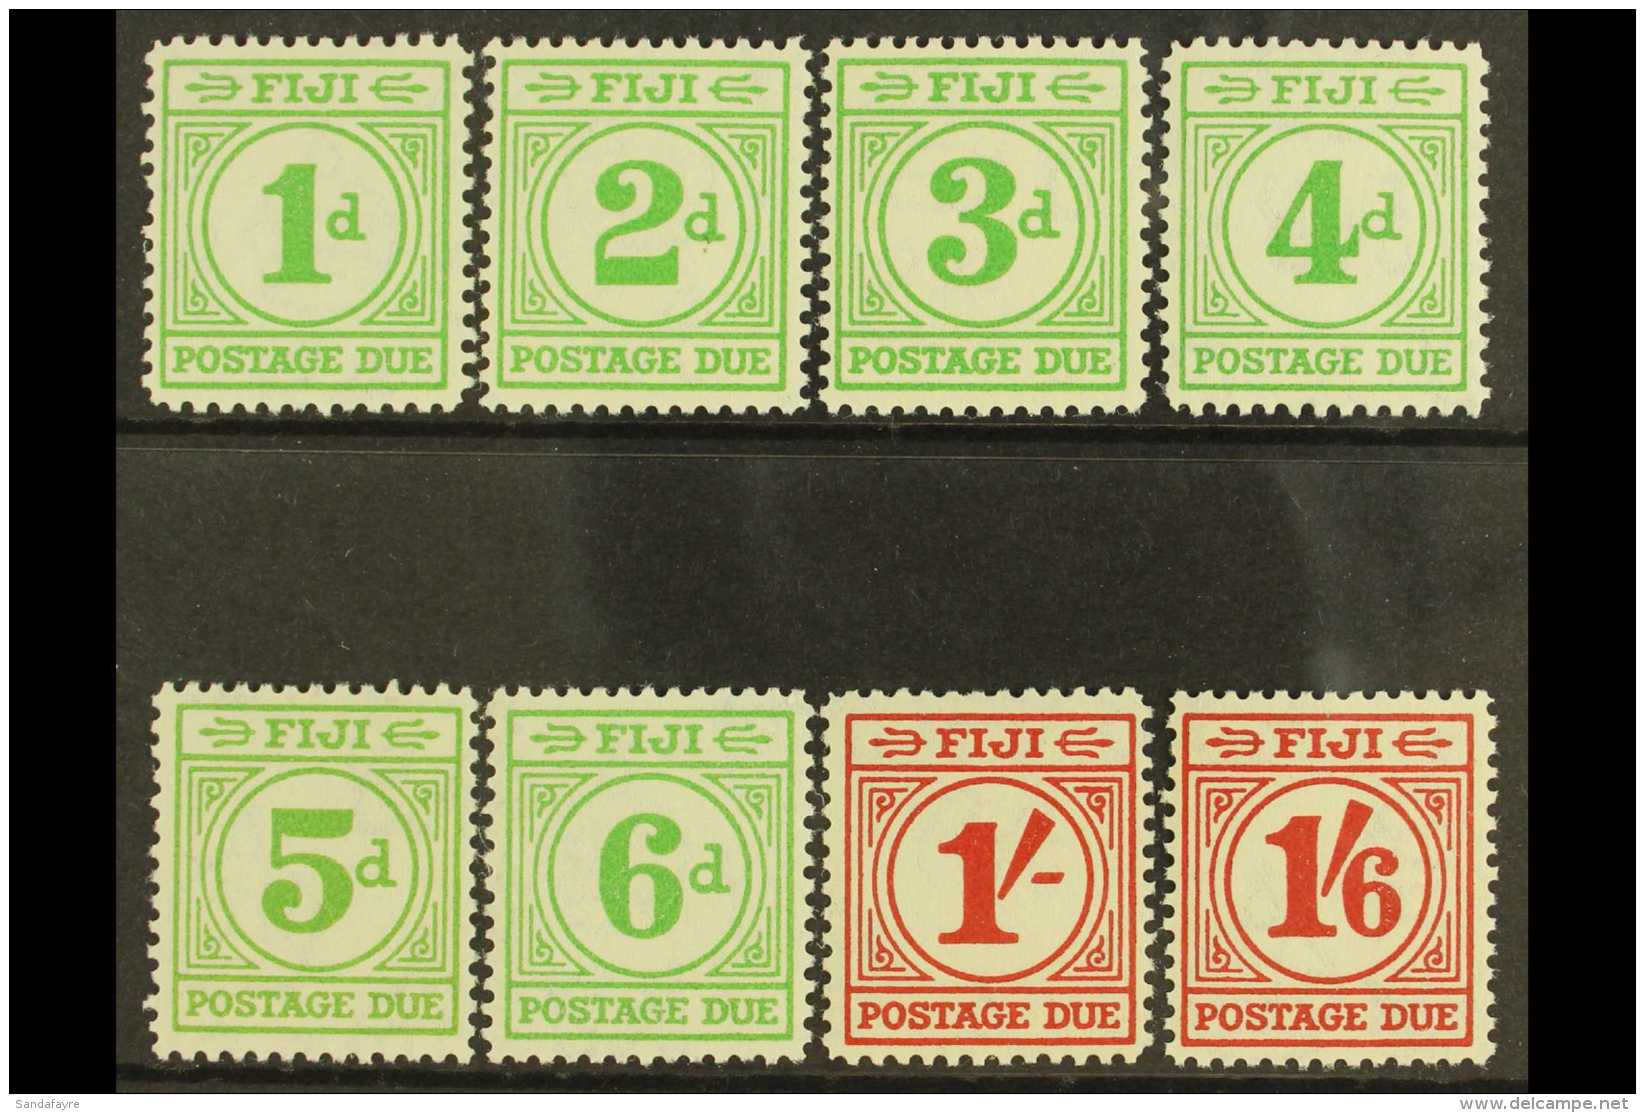 POSTAGE DUES 1940 Complete Set, SG D11/18, Vfm, Fresh (8) For More Images, Please Visit... - Fiji (...-1970)